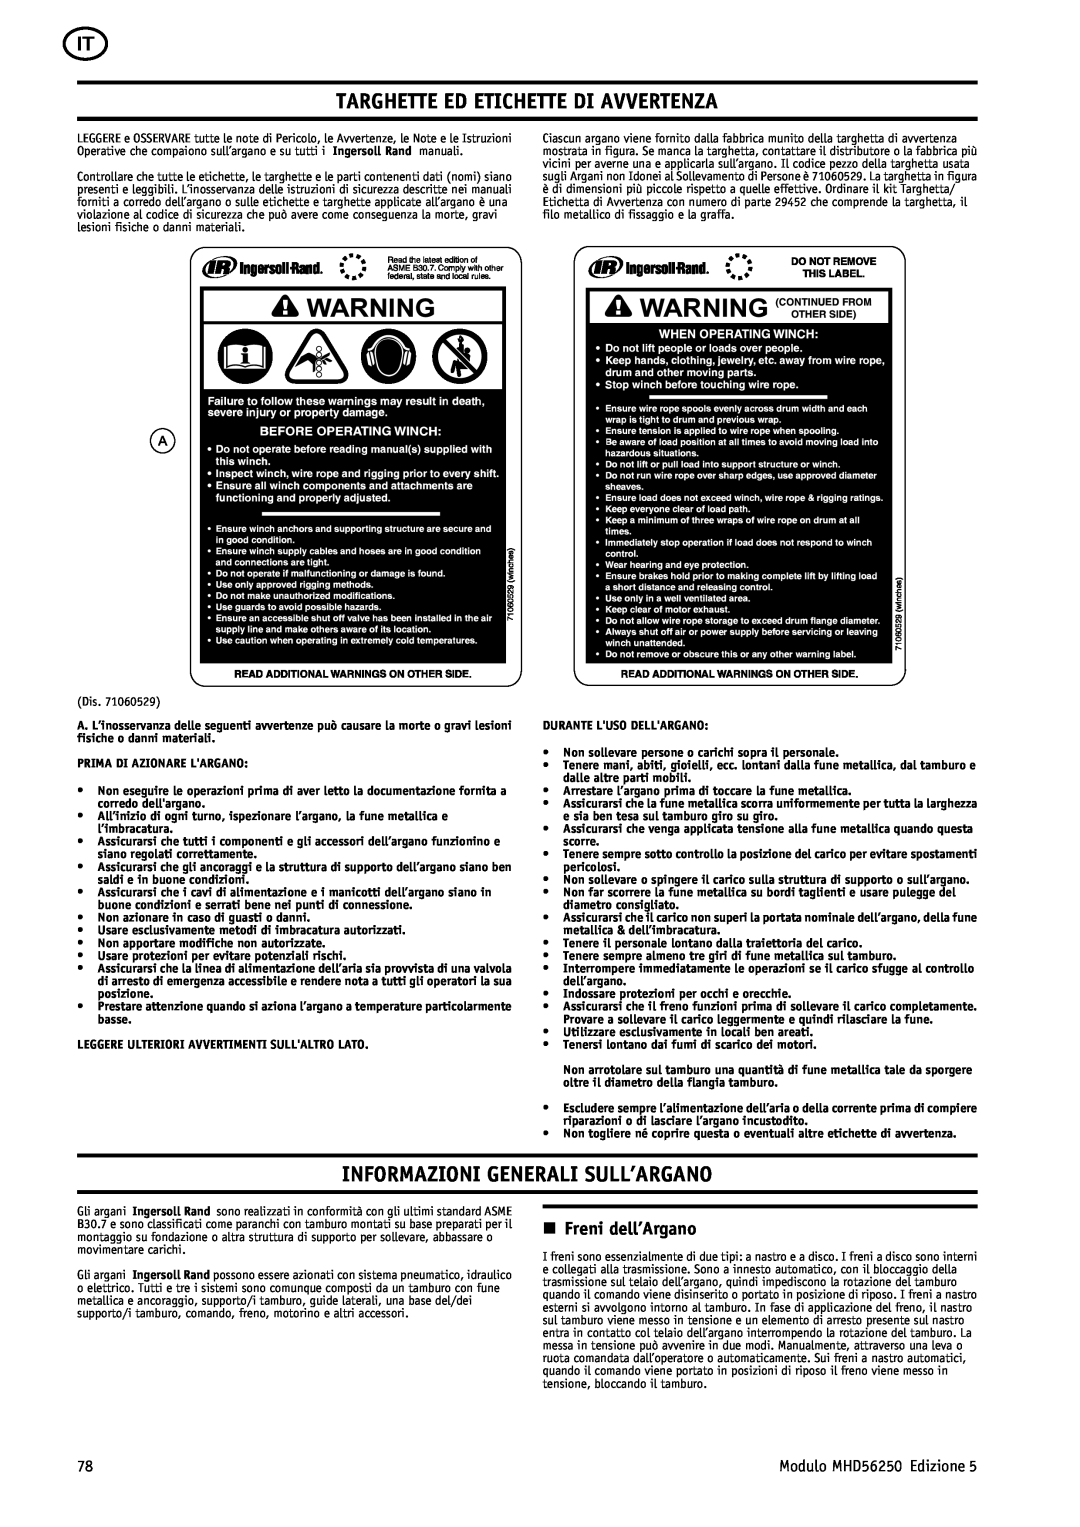 Ingersoll-Rand MHD56250 manual Targhette Ed Etichette Di Avvertenza, Informazioni Generali Sull’Argano, n Freni dell’Argano 